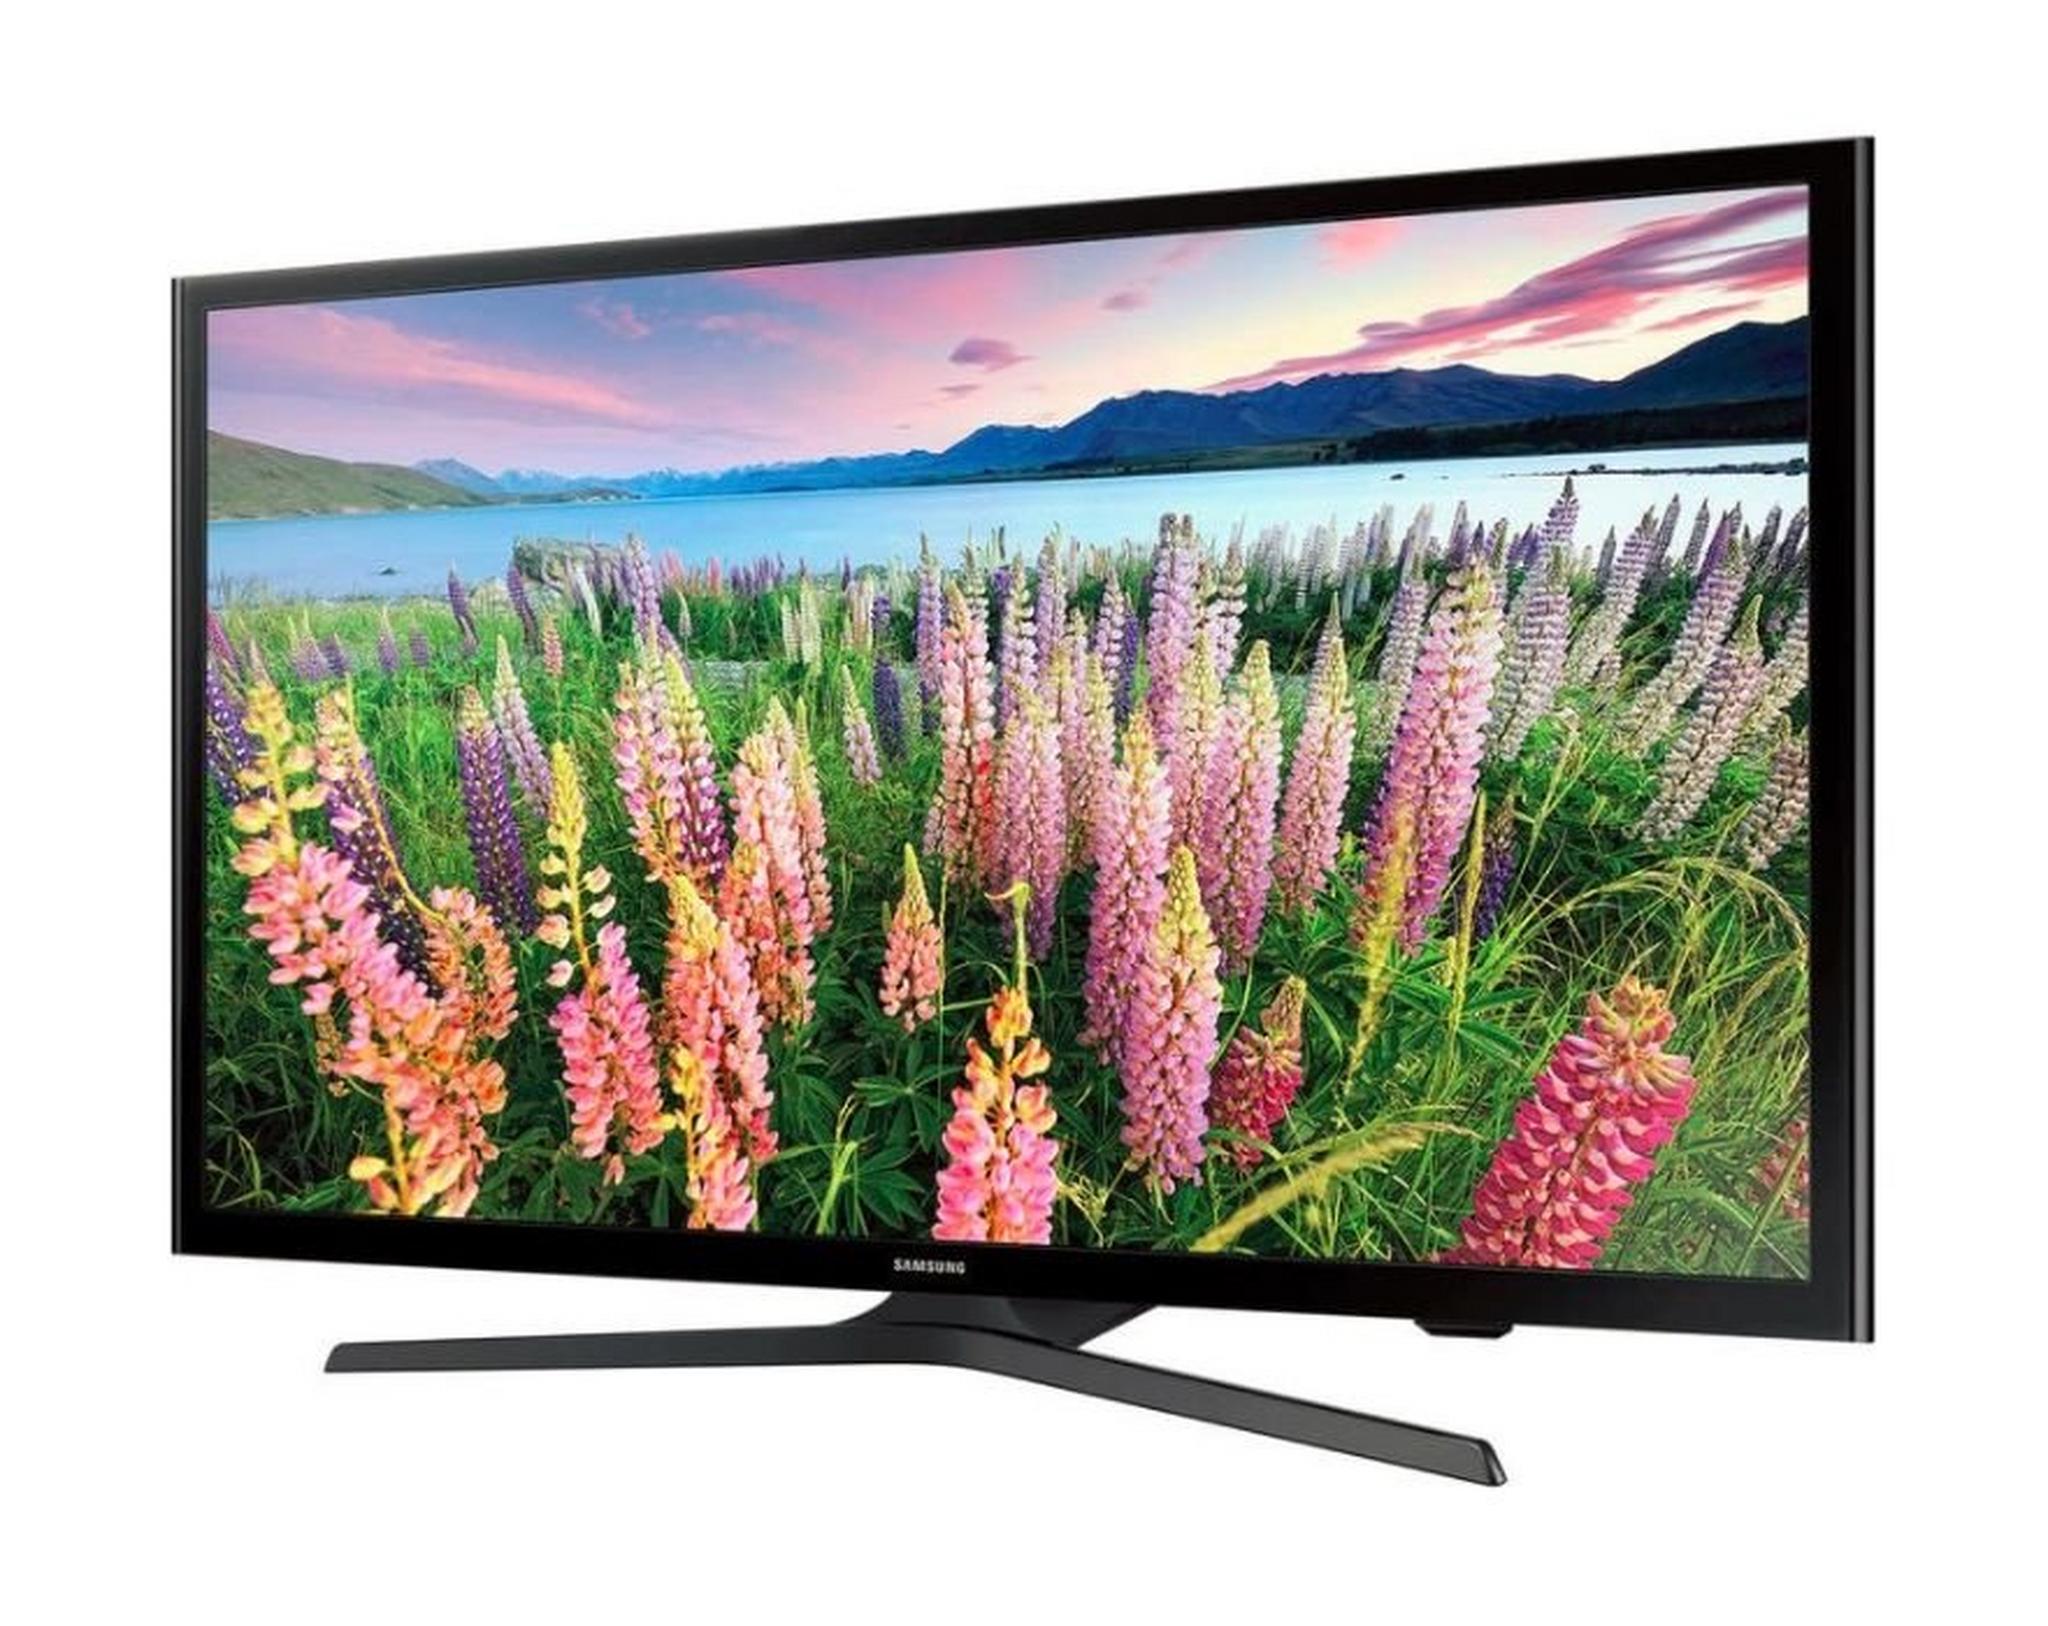 Samsung 49 inch Full HD Smart LED TV - UA49J5200